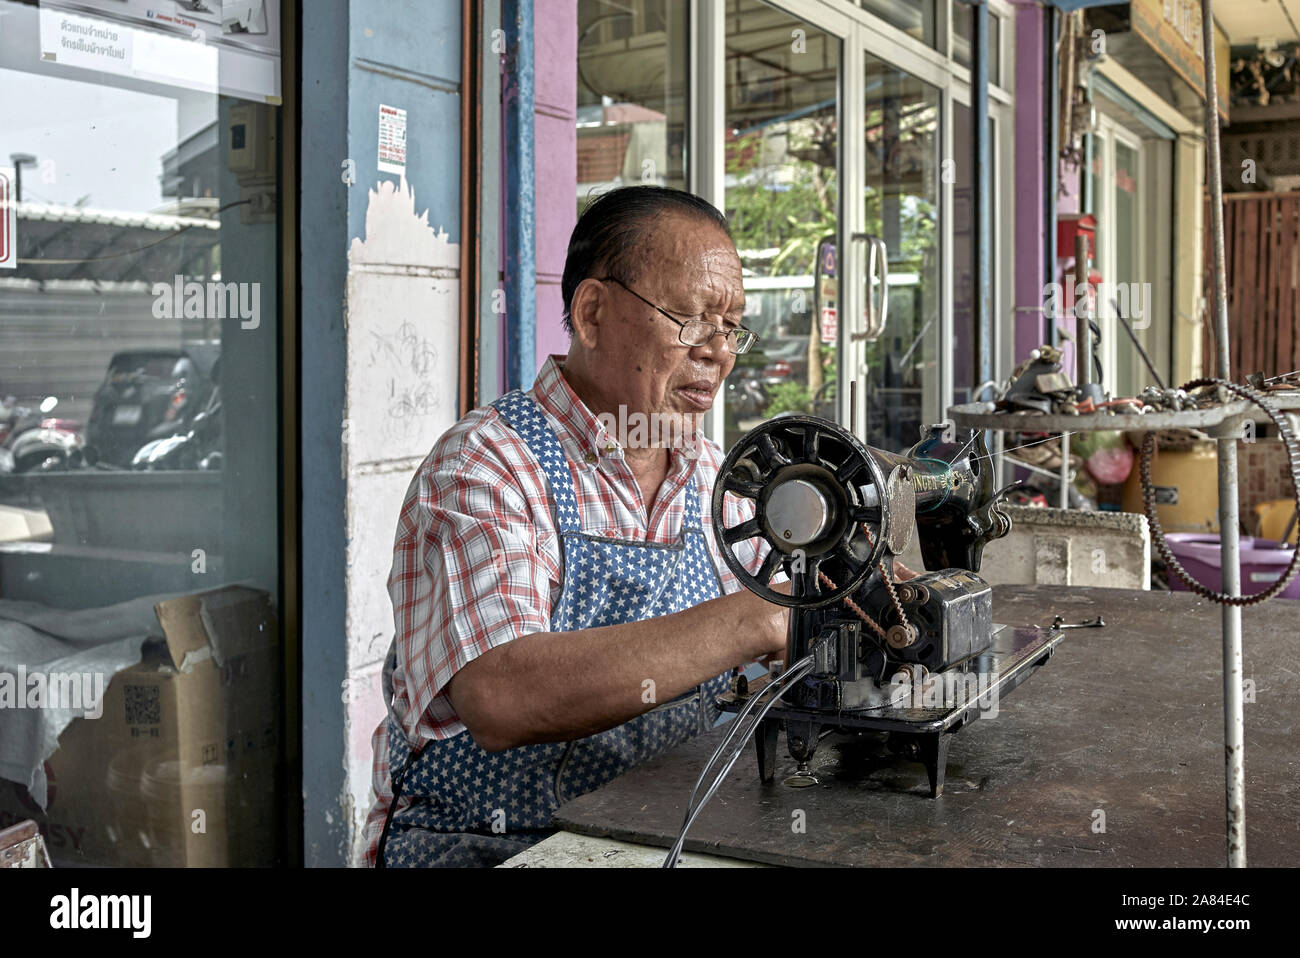 Le service de l'homme de réparation de machines à coudre Singer vintage. La Thaïlande Asie du sud-est Banque D'Images